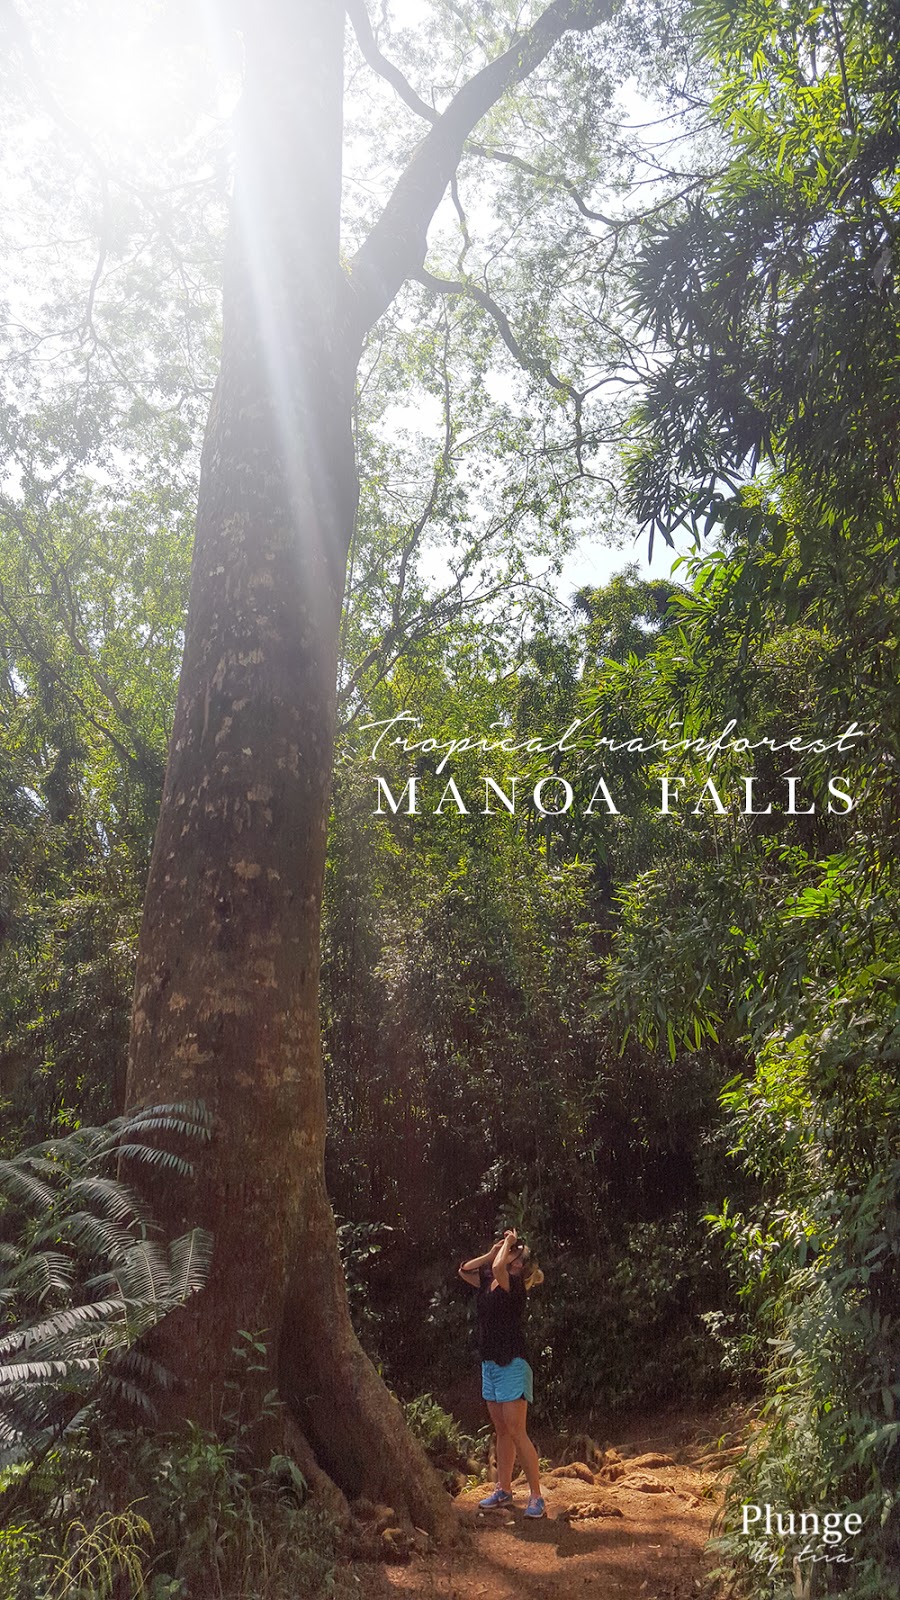 Manoa falls